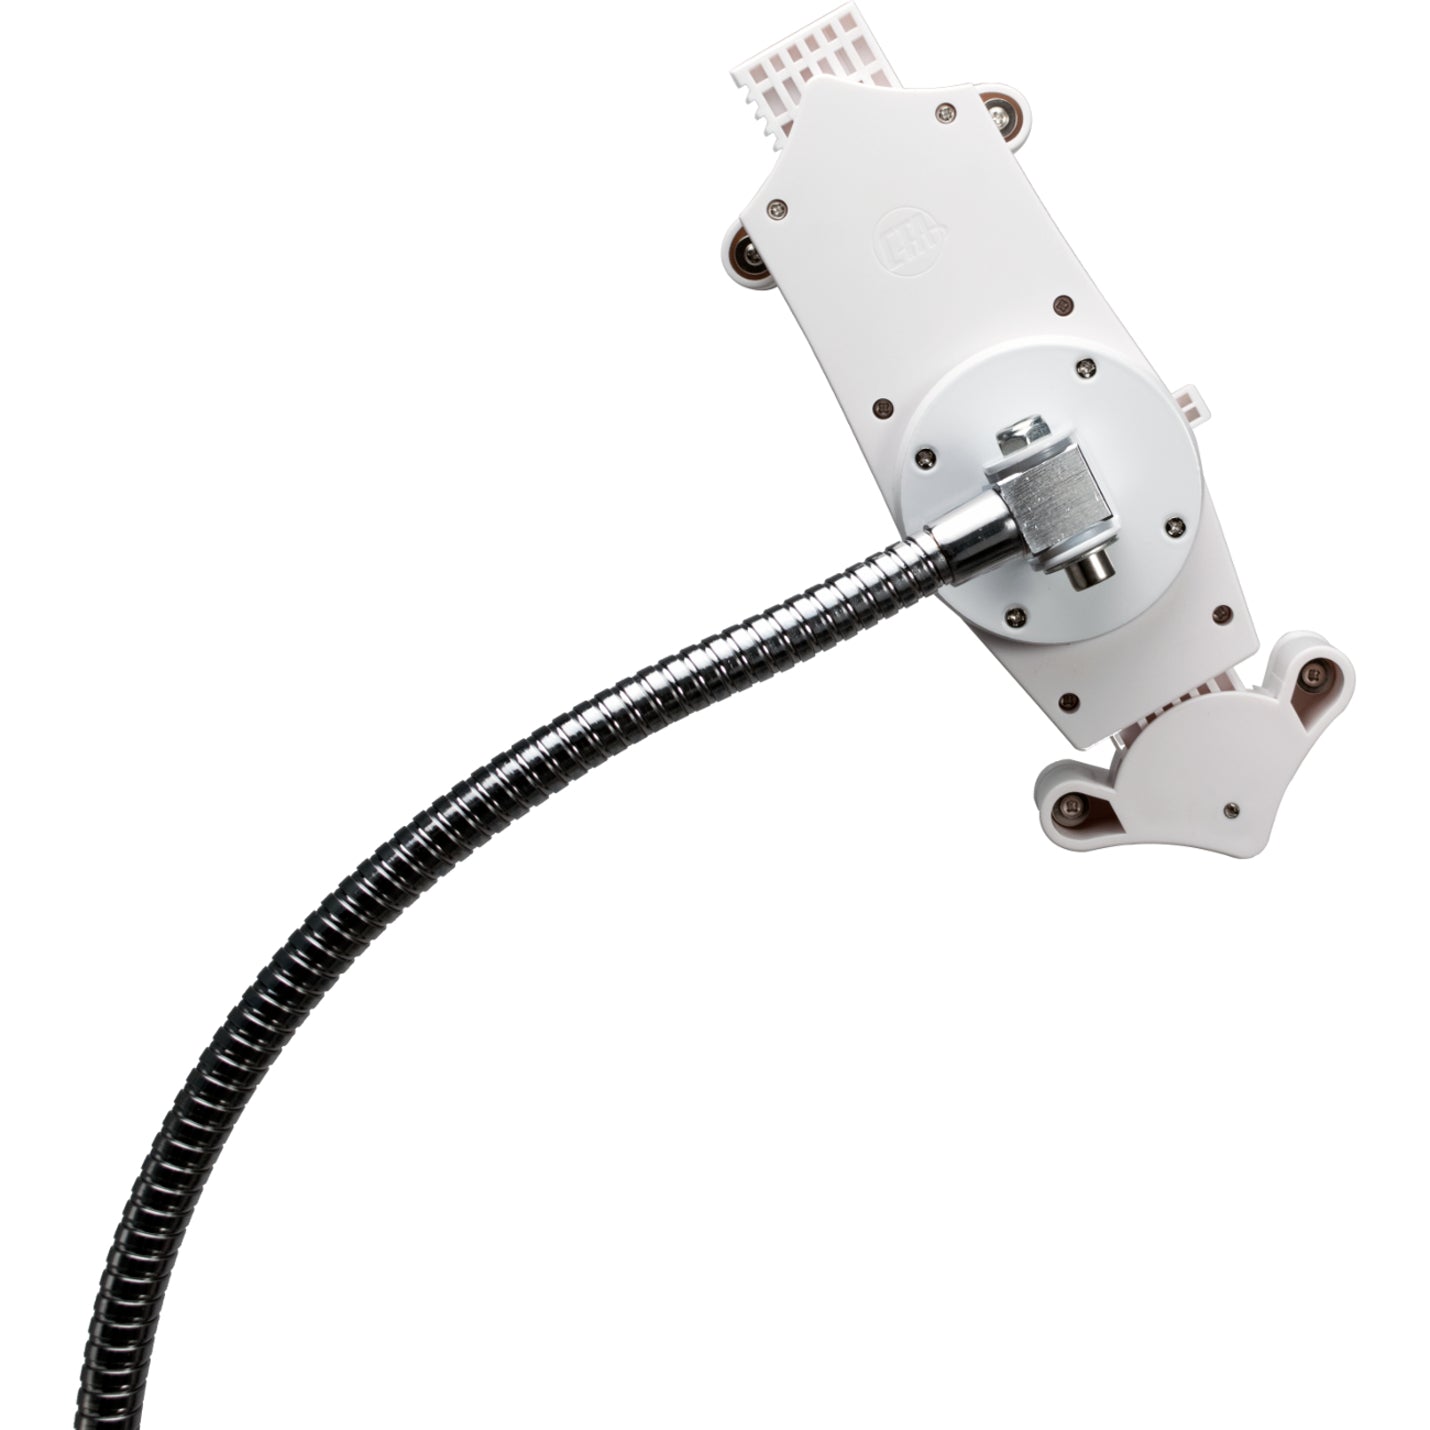 CTA Digital PAD-HFS Supporto per pavimento con collo d'oca resistente per tablet da 7-13 pollici regolabile in altezza rotazione a 360° mobilità rotelle girevoli.